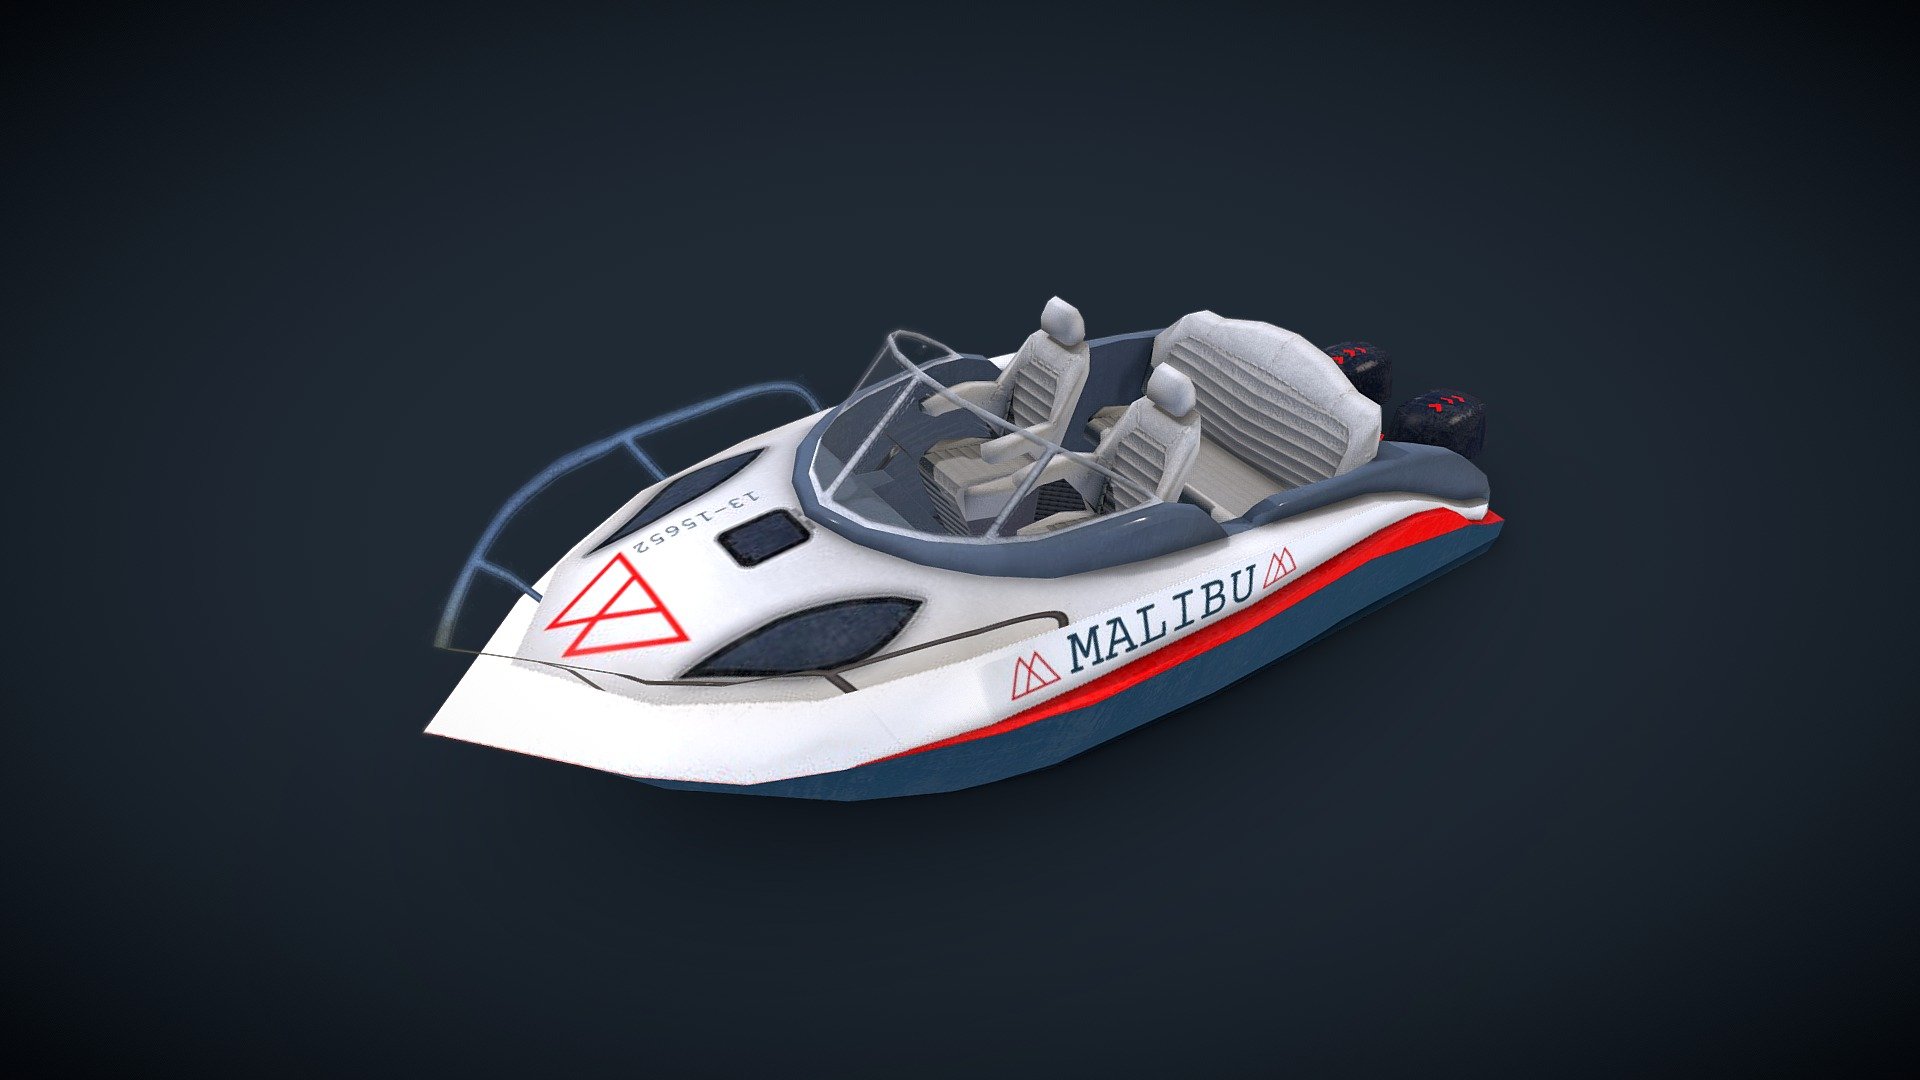 Low-poly boat model 3d model